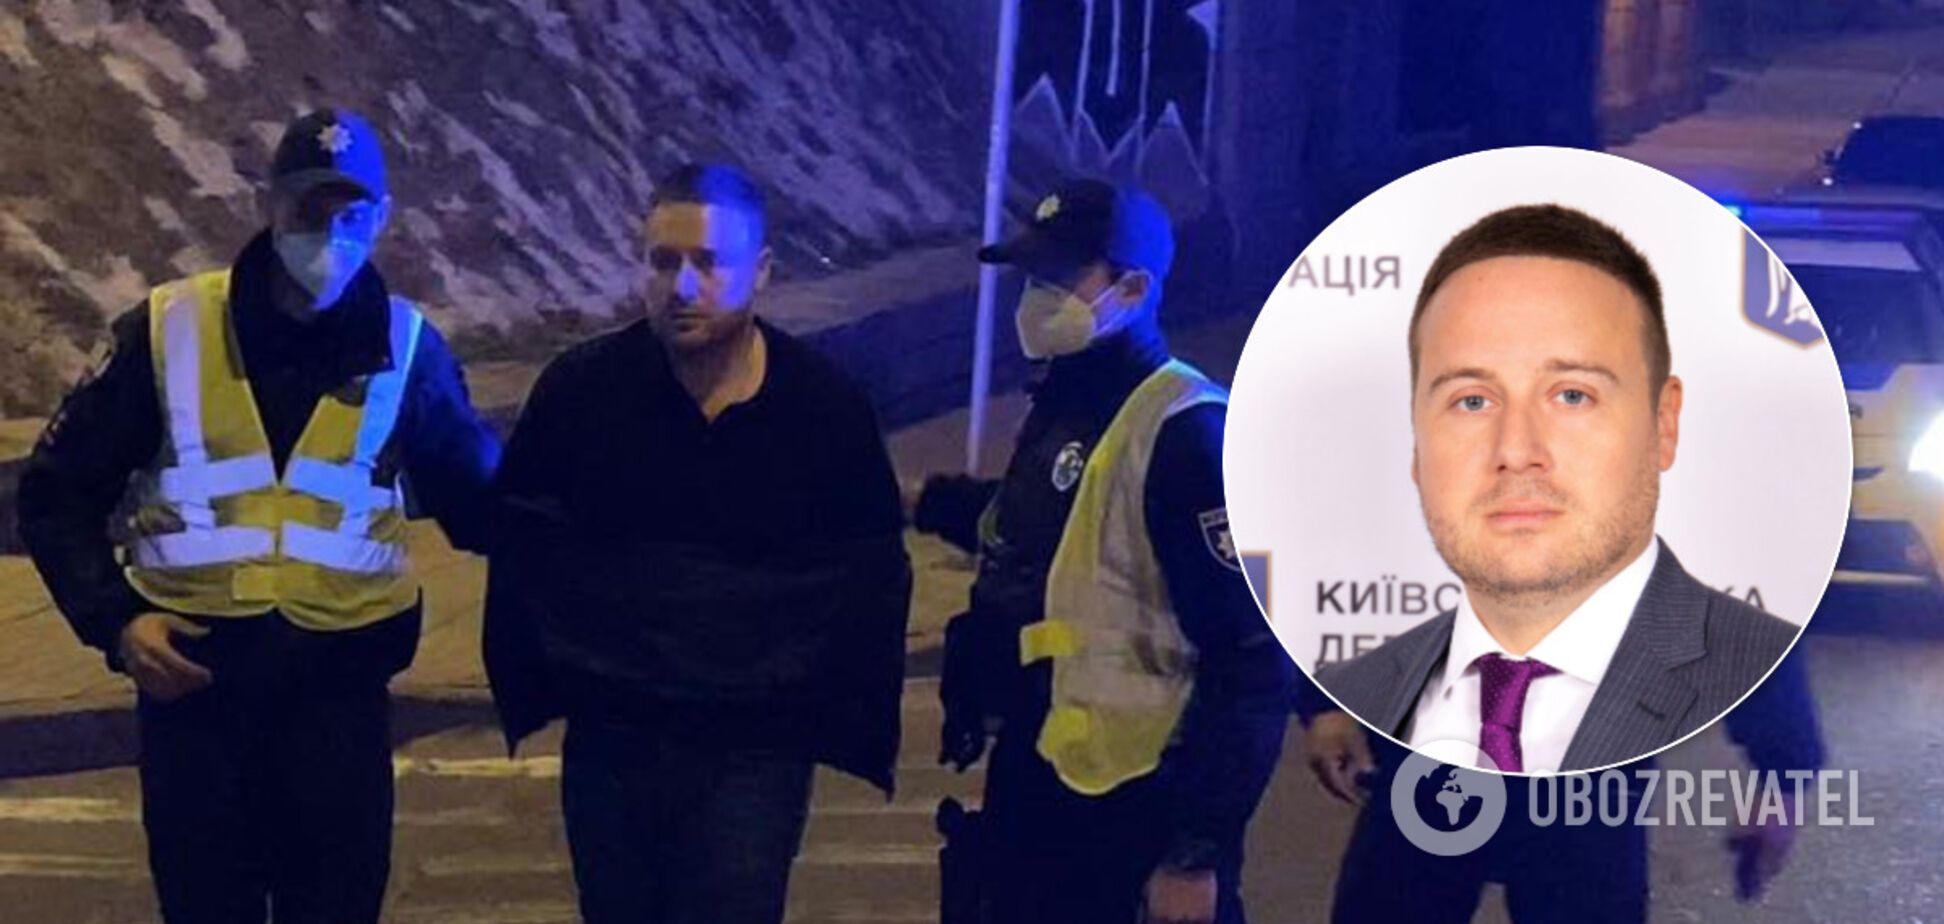 Топ-чиновник КГГА устроил драку с полицейским в Киеве и был с позором уволен. Видео